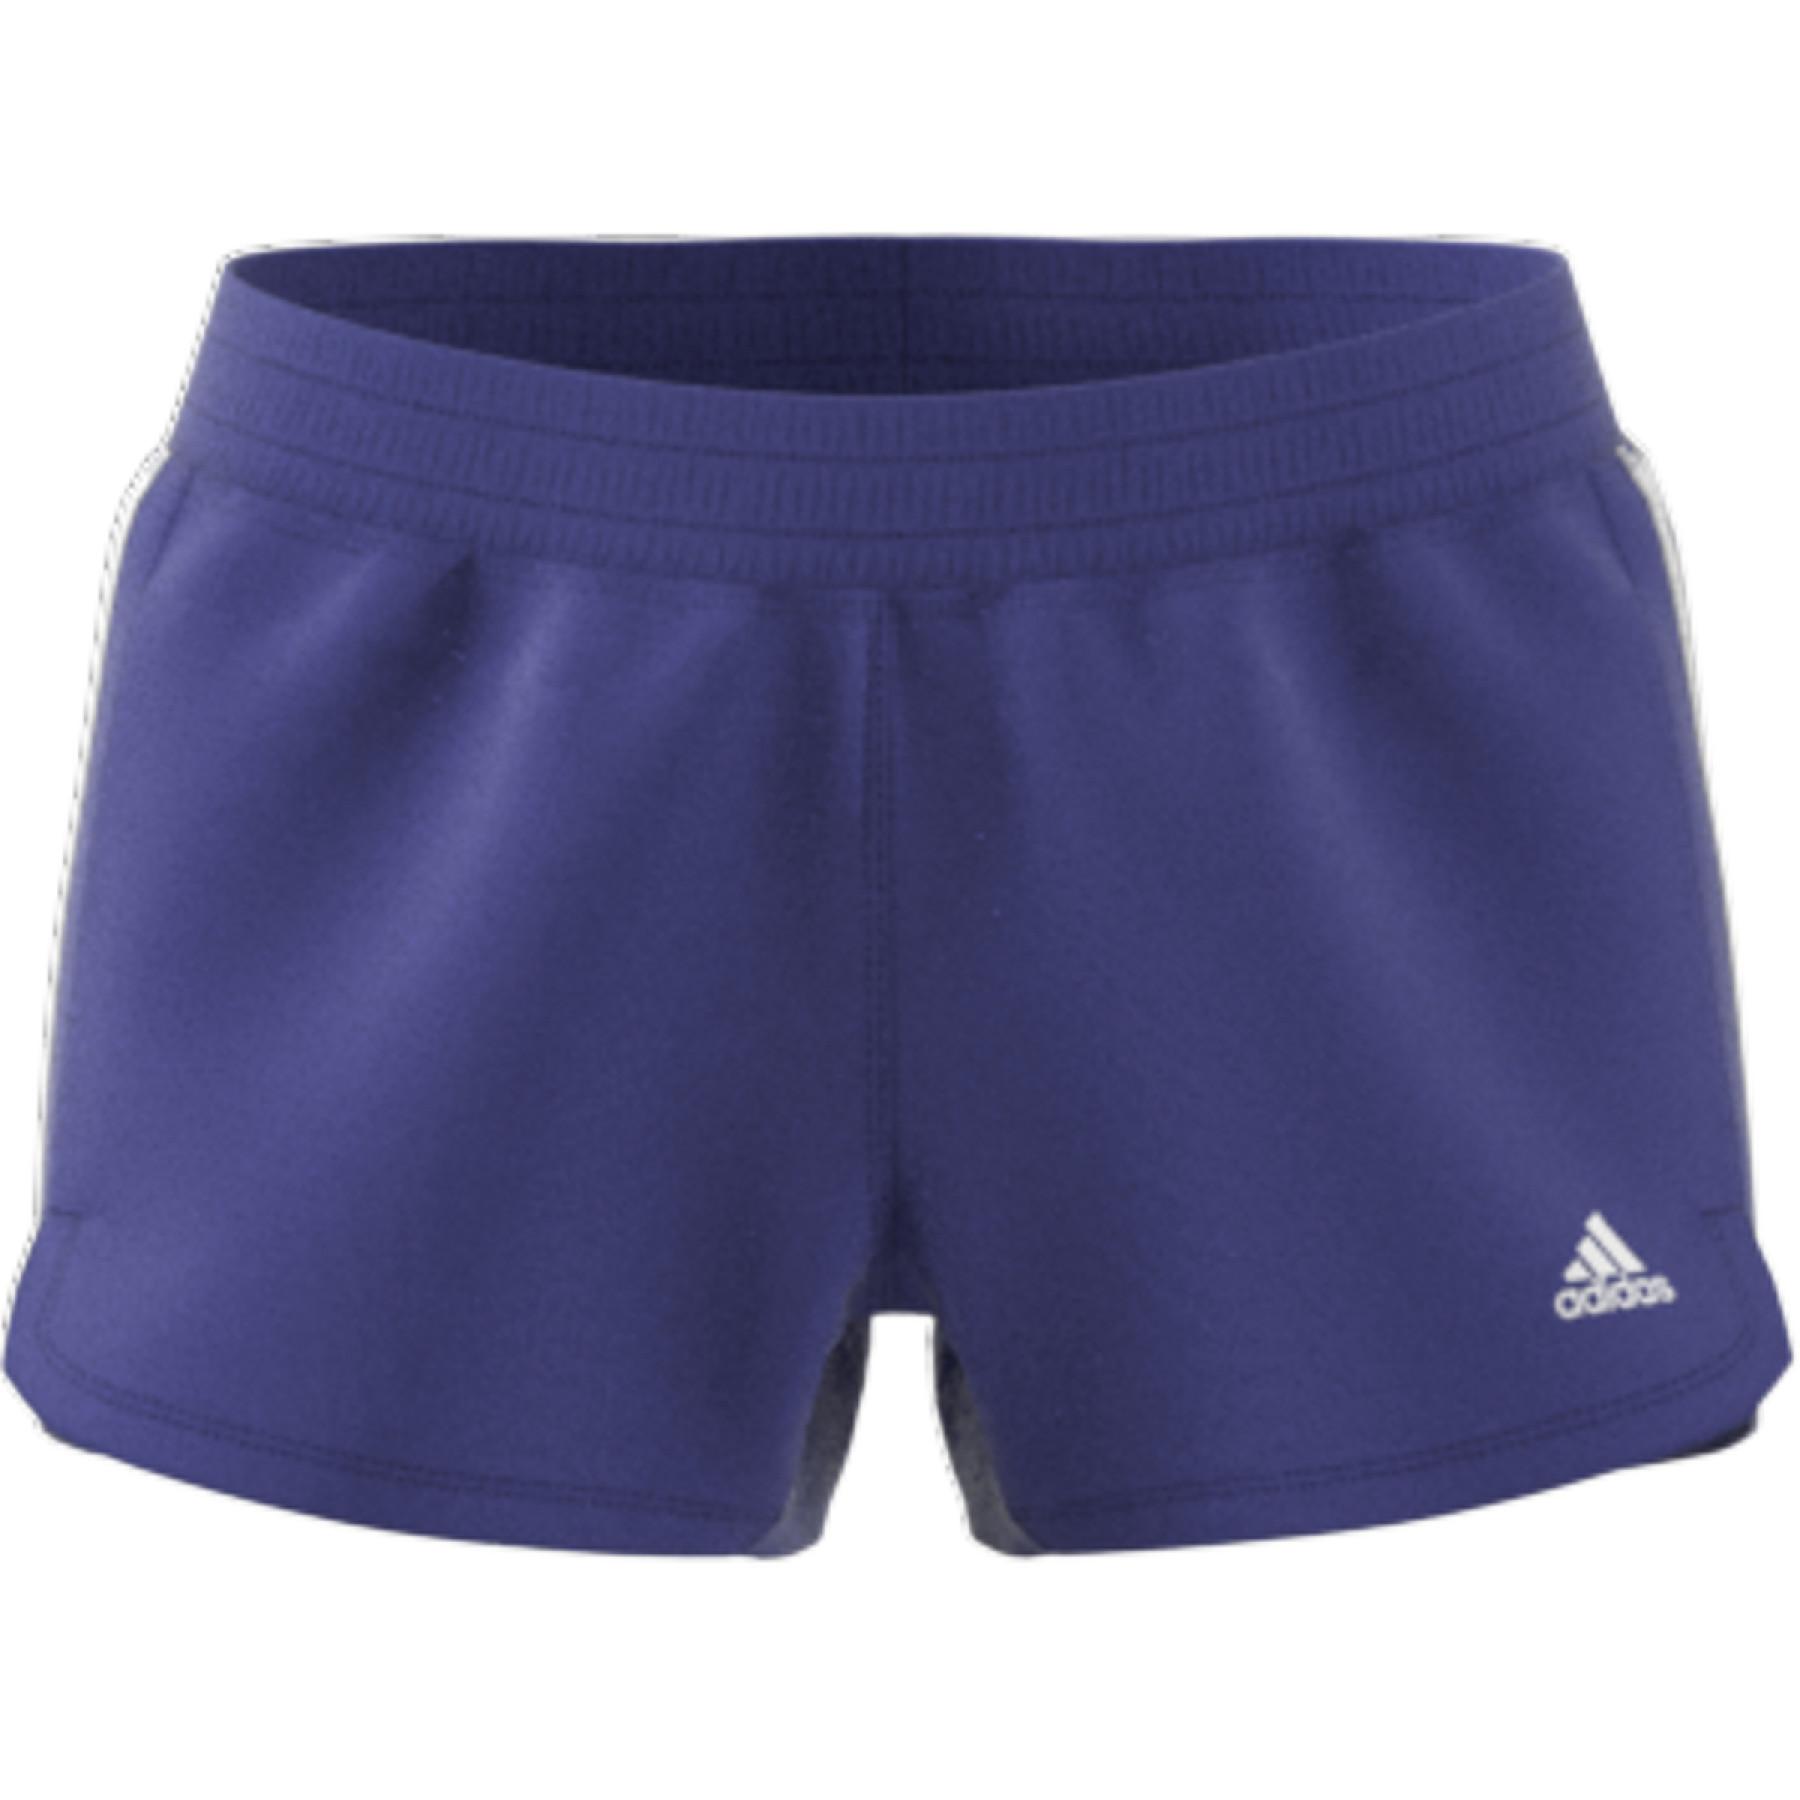 Damen-Shorts adidas Pacer 3-Bandes Knit